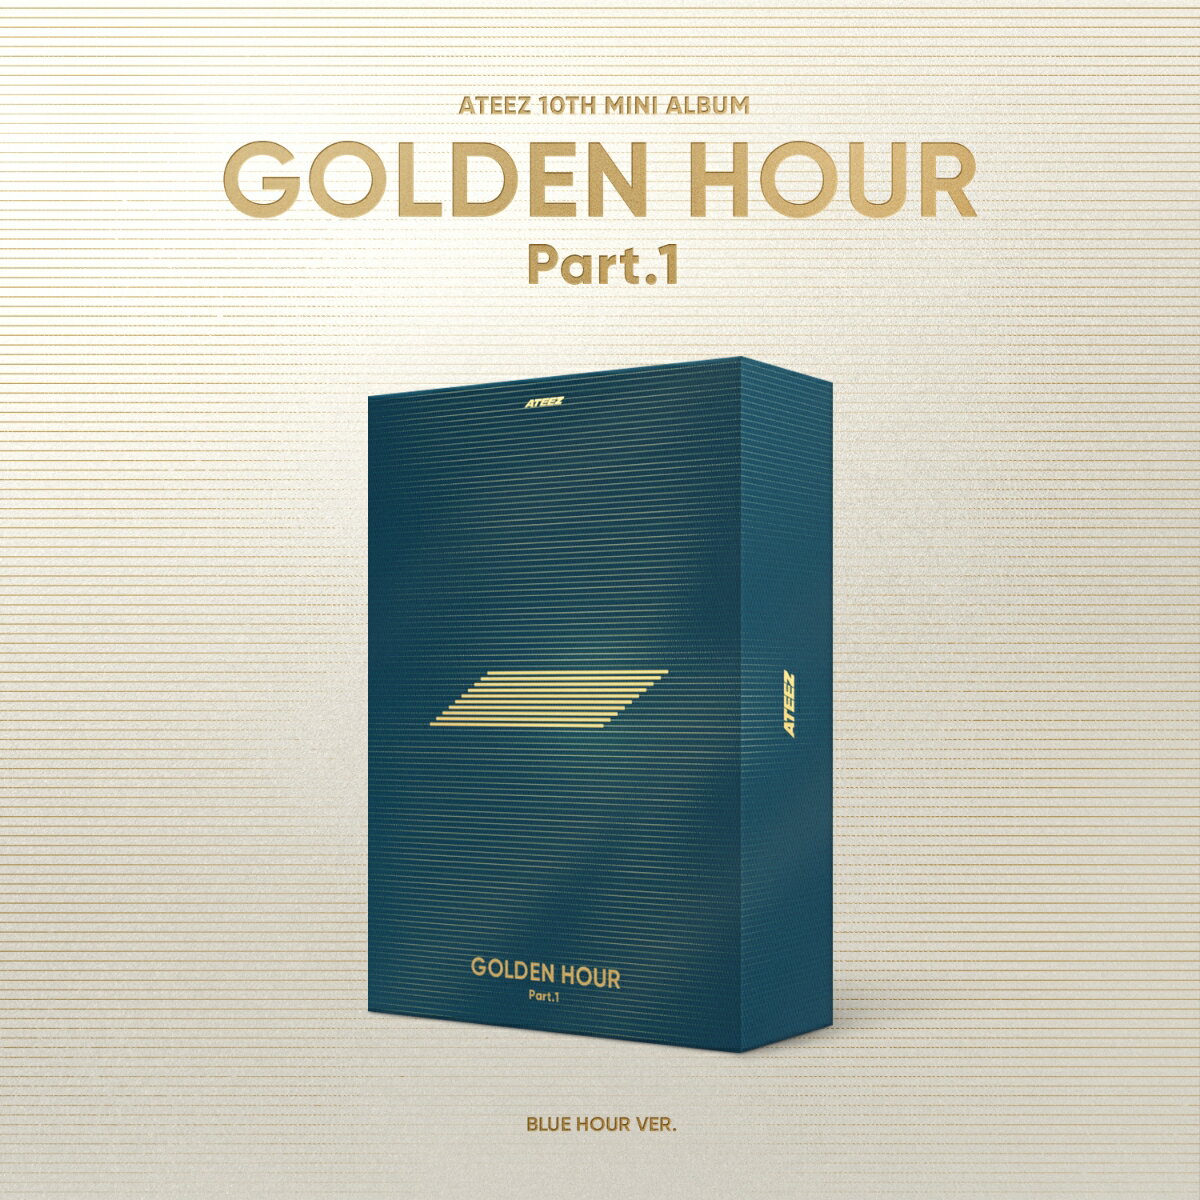 【楽天ブックス限定先着特典】GOLDEN HOUR : Part.1 (BLUE HOUR VER.)(メンバー別クリアシート 1枚(全8種のうちランダム1枚))